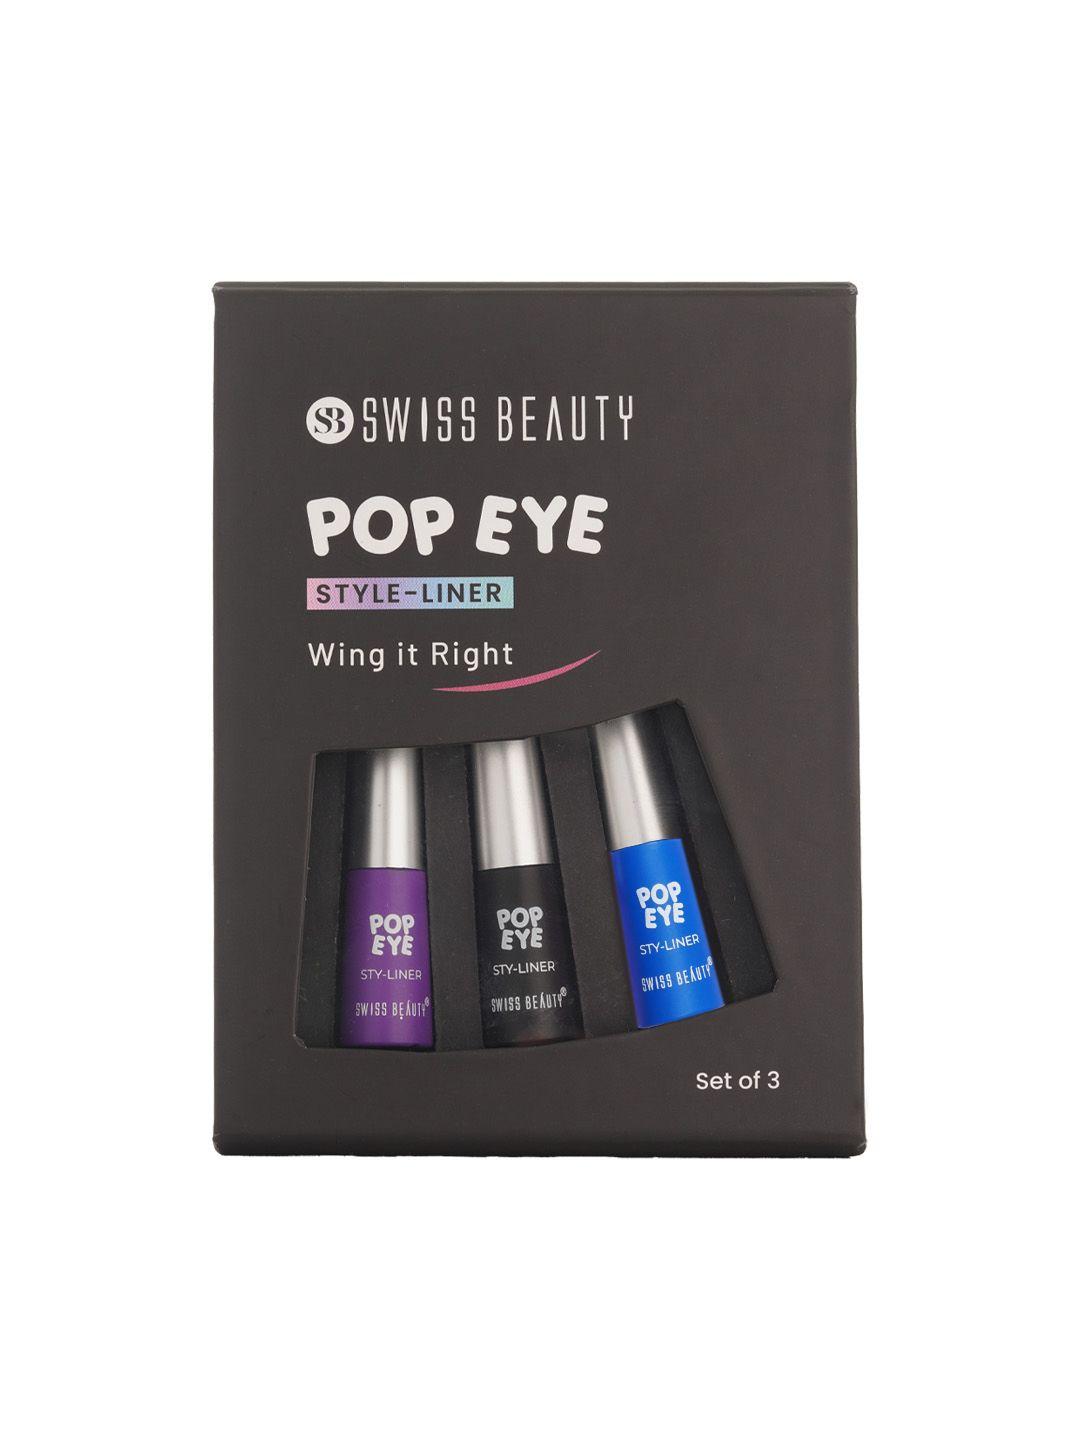 swiss beauty pop eye style-liner set - 3 pcs